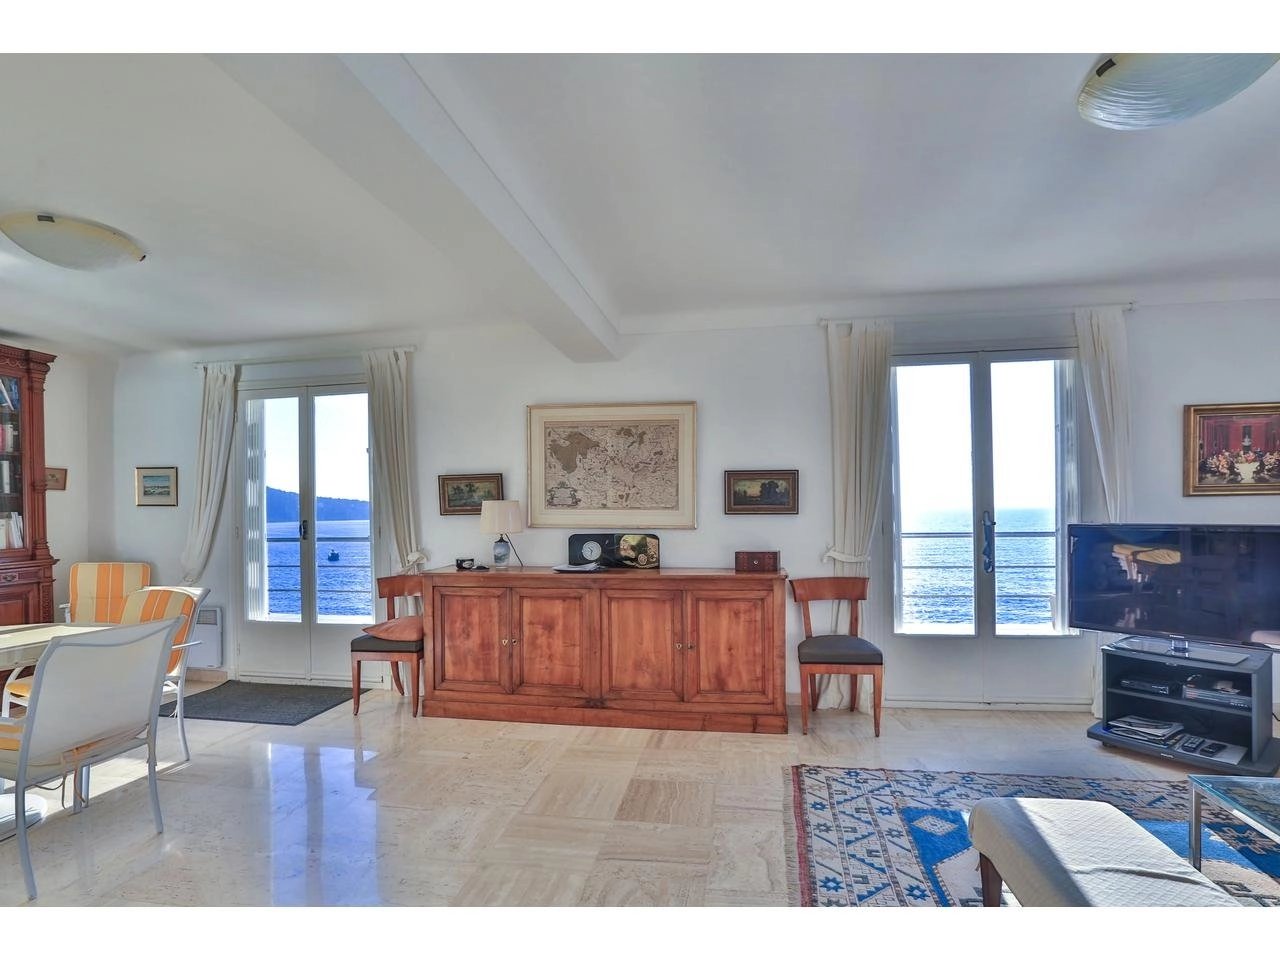 Maison  5 Rooms 160m2  for sale  4 200 000 €